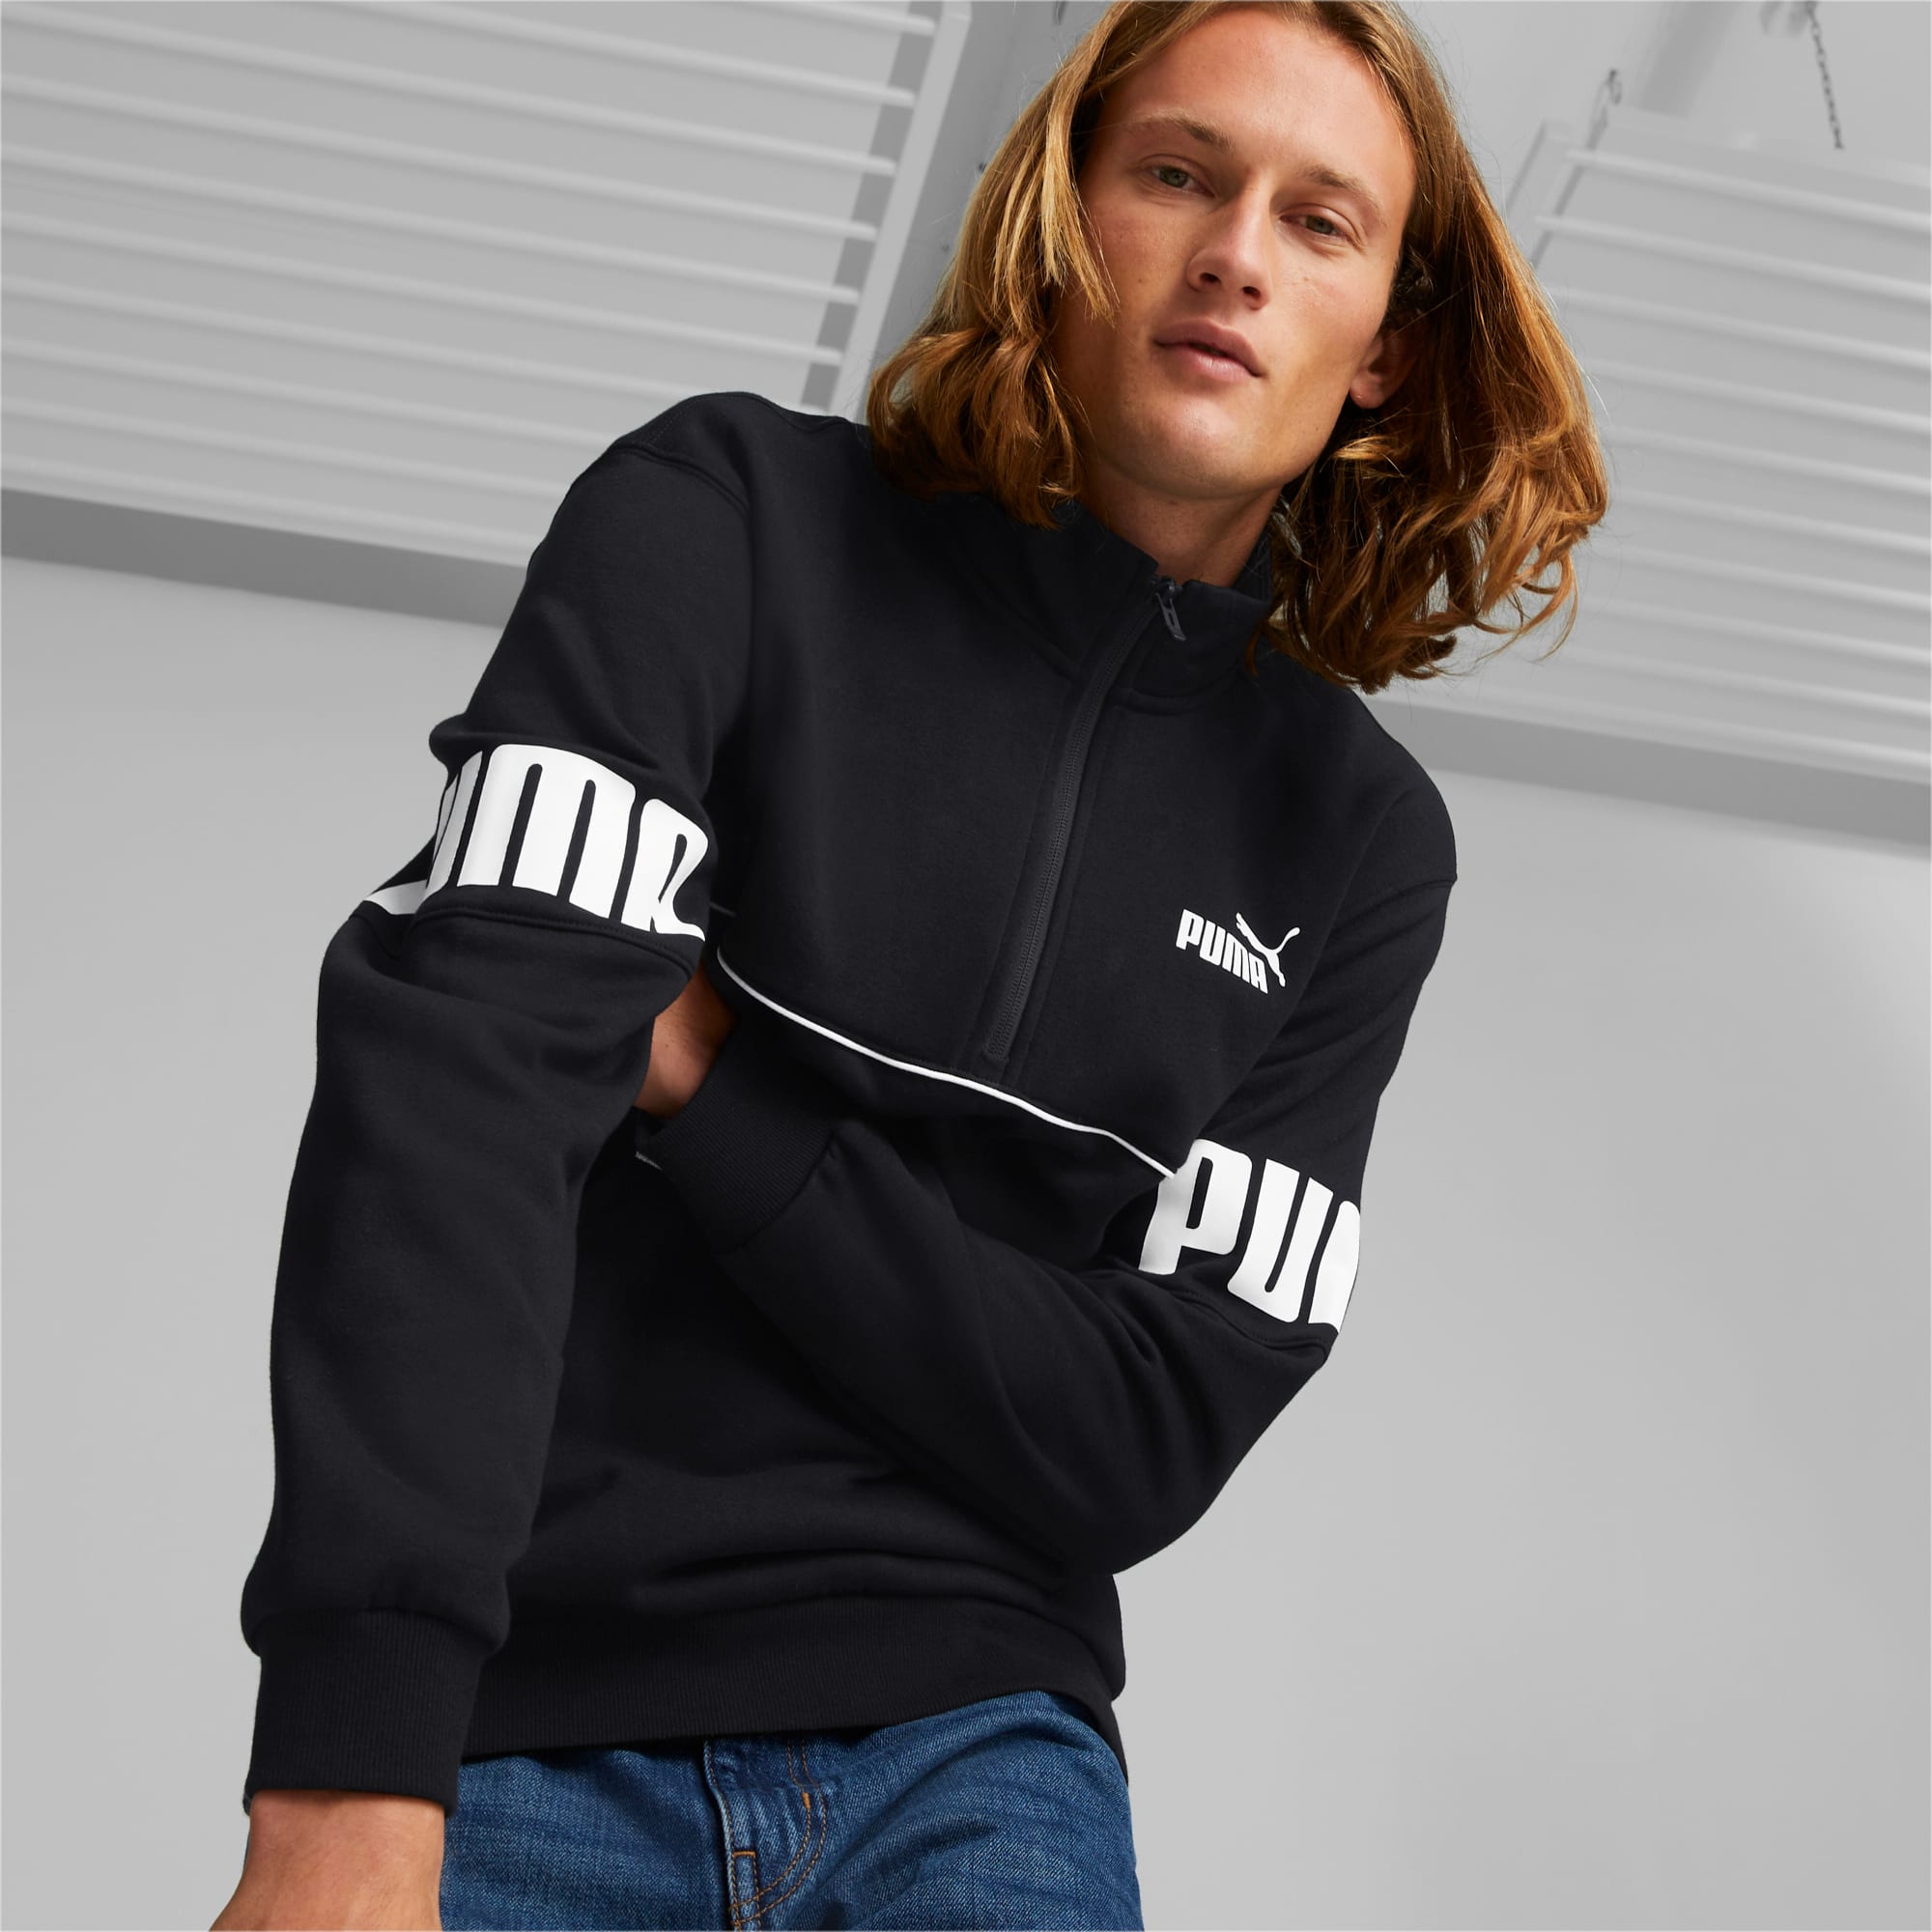 Buy Puma Power Hooded 1/2 Zip Mens Black Sweatshirt online